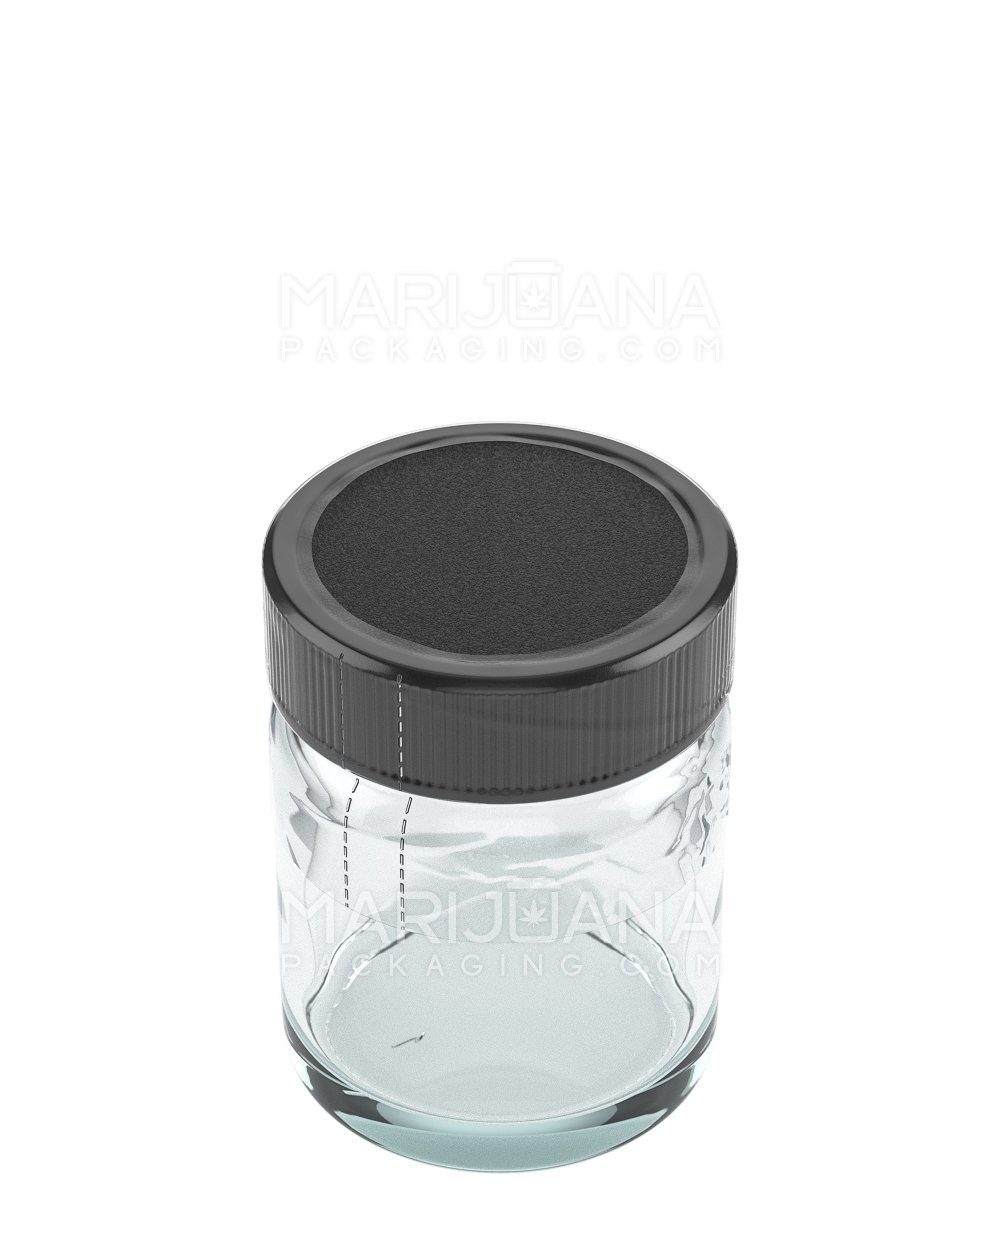 Tamper Evident | Heat Shrink Bands for Jars | 1oz - Clear Plastic - 1000 Count - 2